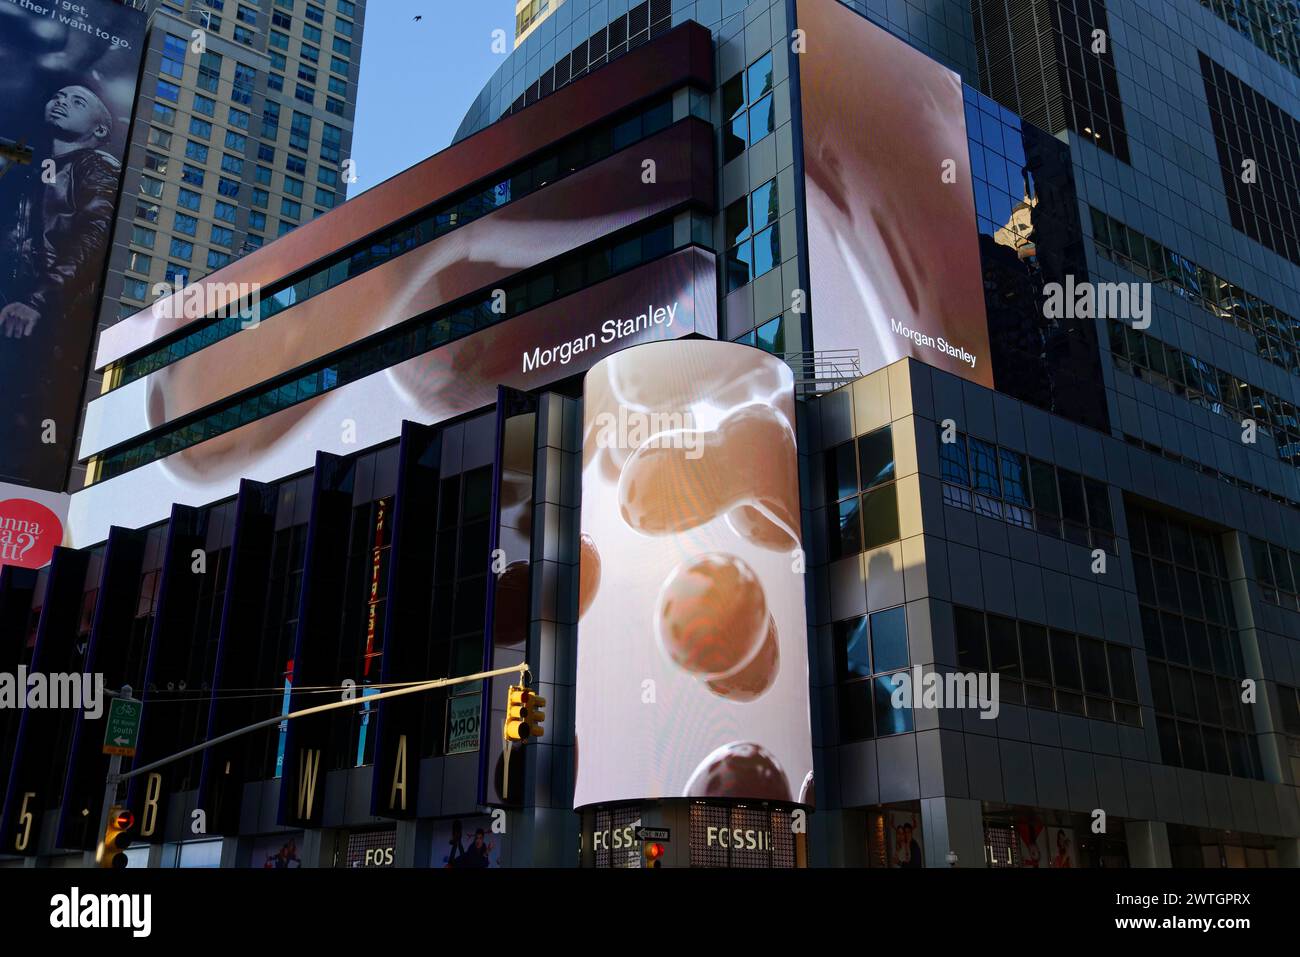 Großes digitales Werbeplakat von Morgan Stanley auf einem Wolkenkratzer in Manhattan, New York City, New York, USA, Nordamerika Stockfoto